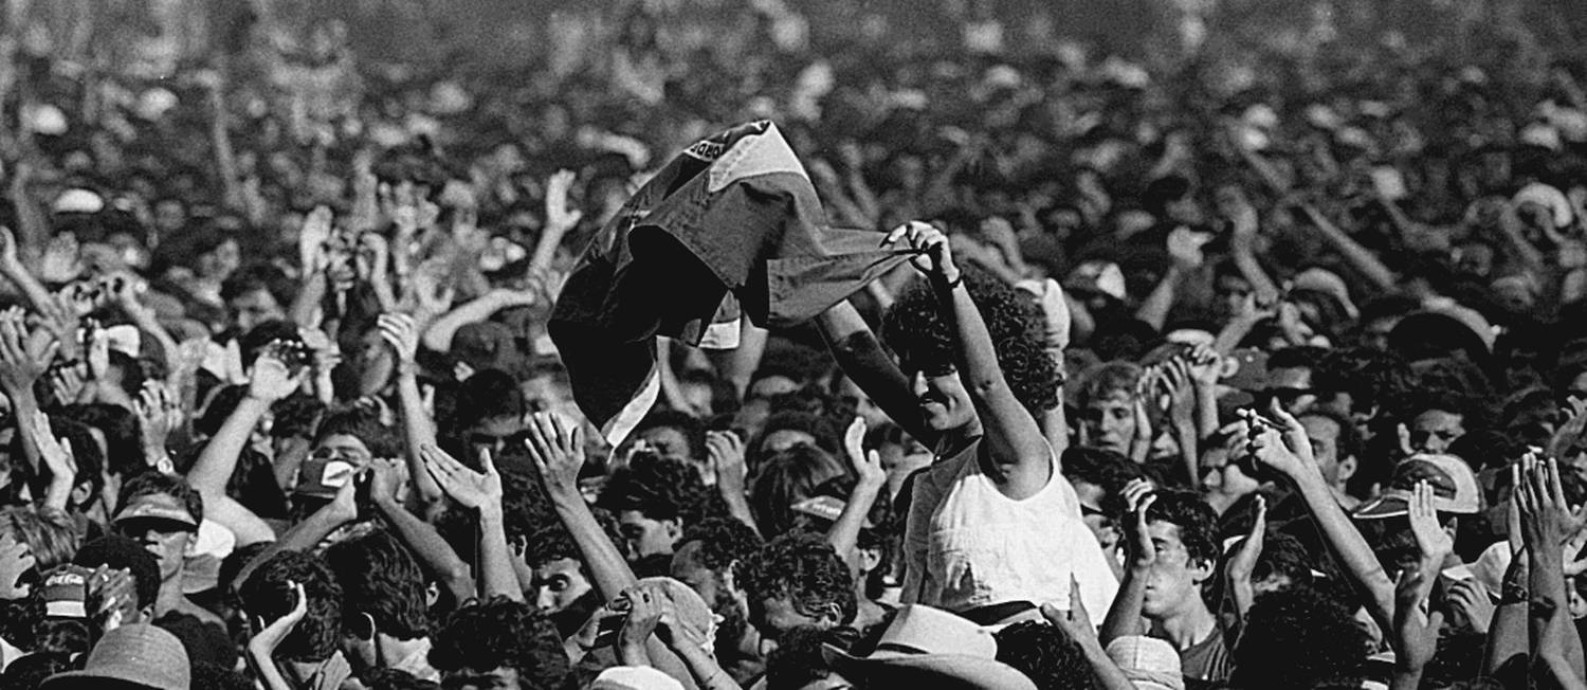 Plateia da primeira edição do Rock in Rio, em 1985 Foto: Jorge Marinho / Agência O Globo